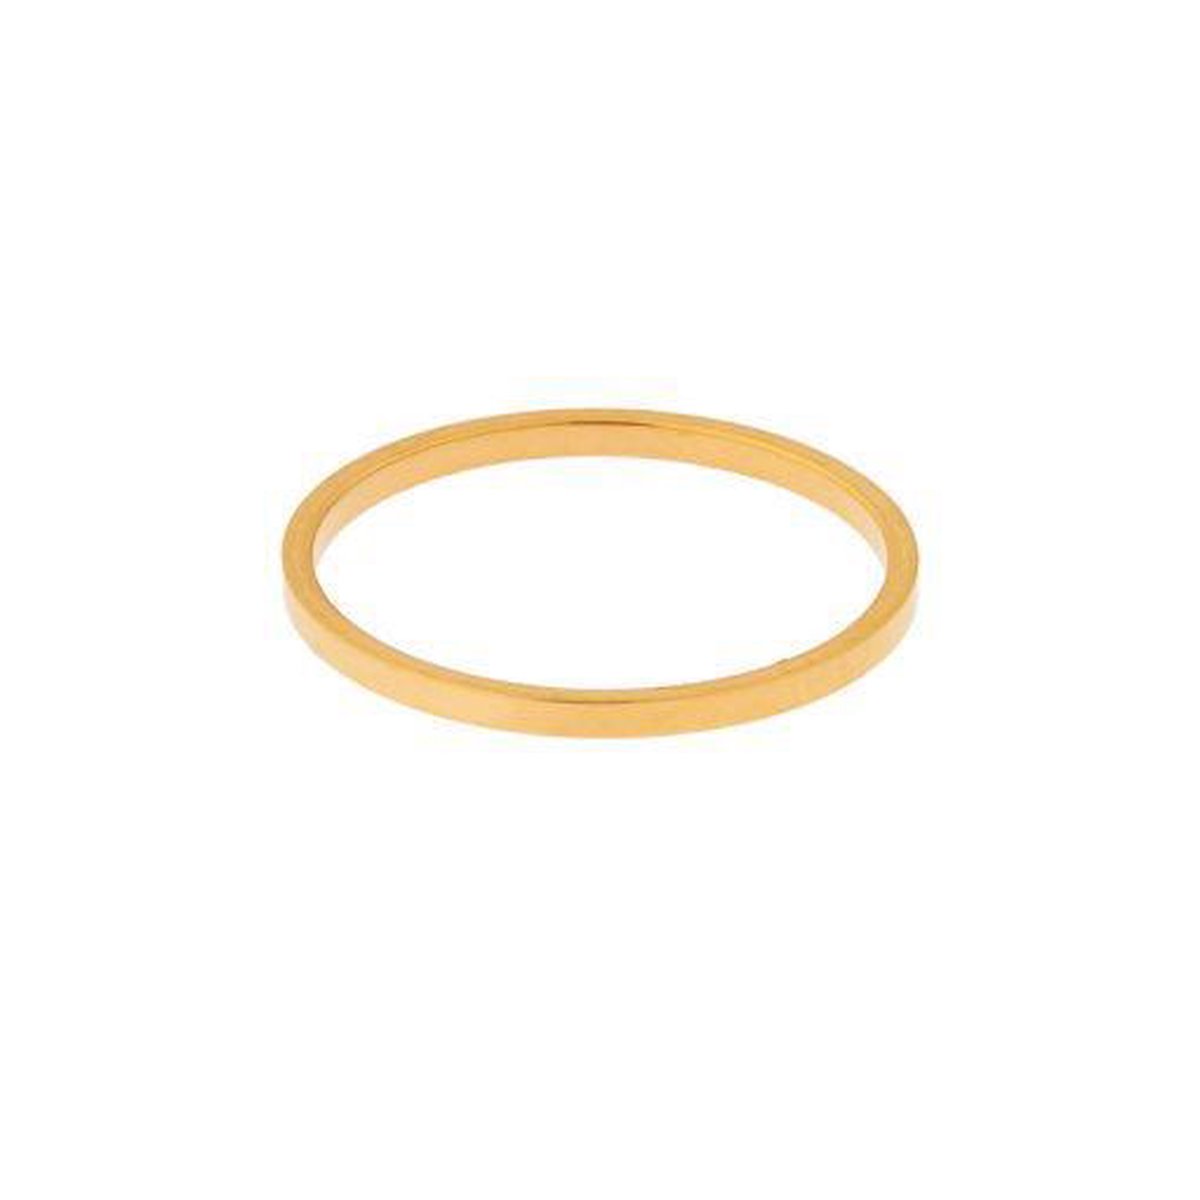 Ring basic vierkant smal - Maat 18 - Goud - Stainless steel (verkleurt niet)